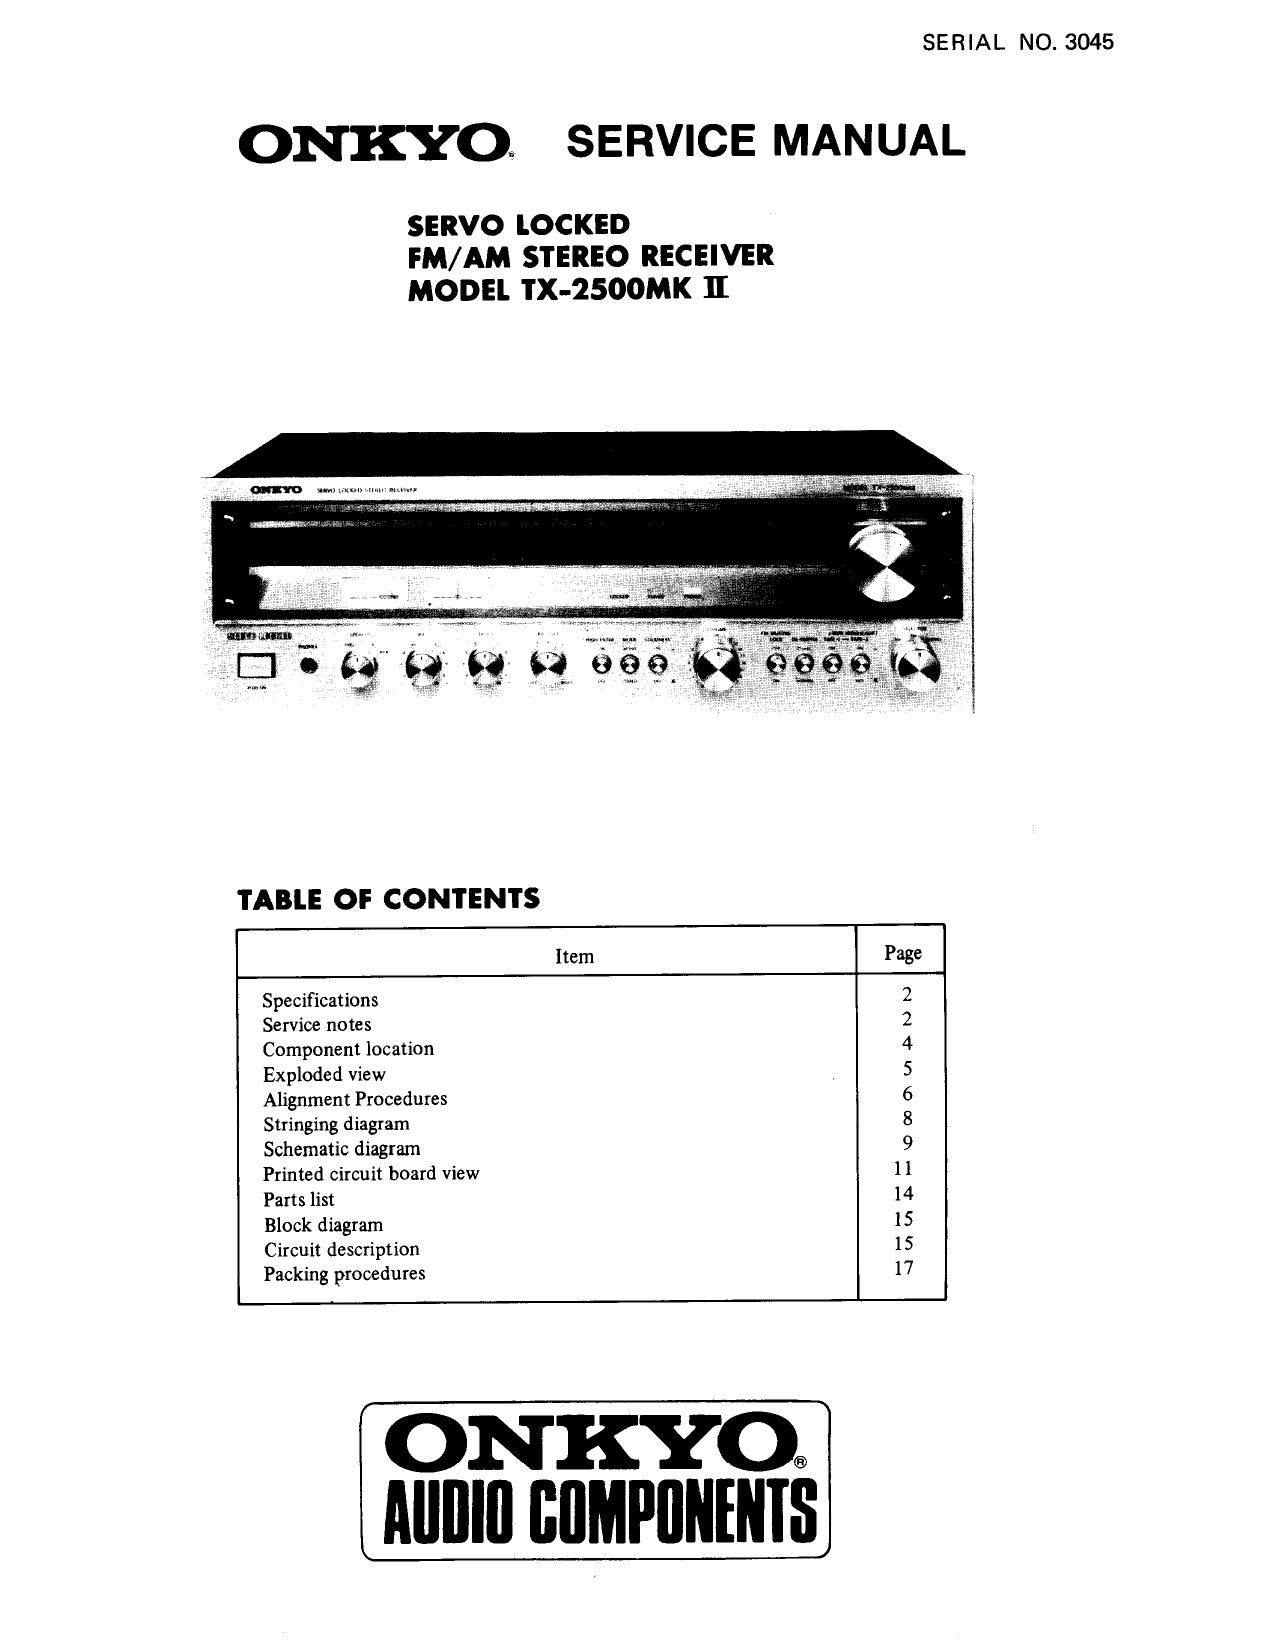 Onkyo TX 2500 MK2 Service Manual